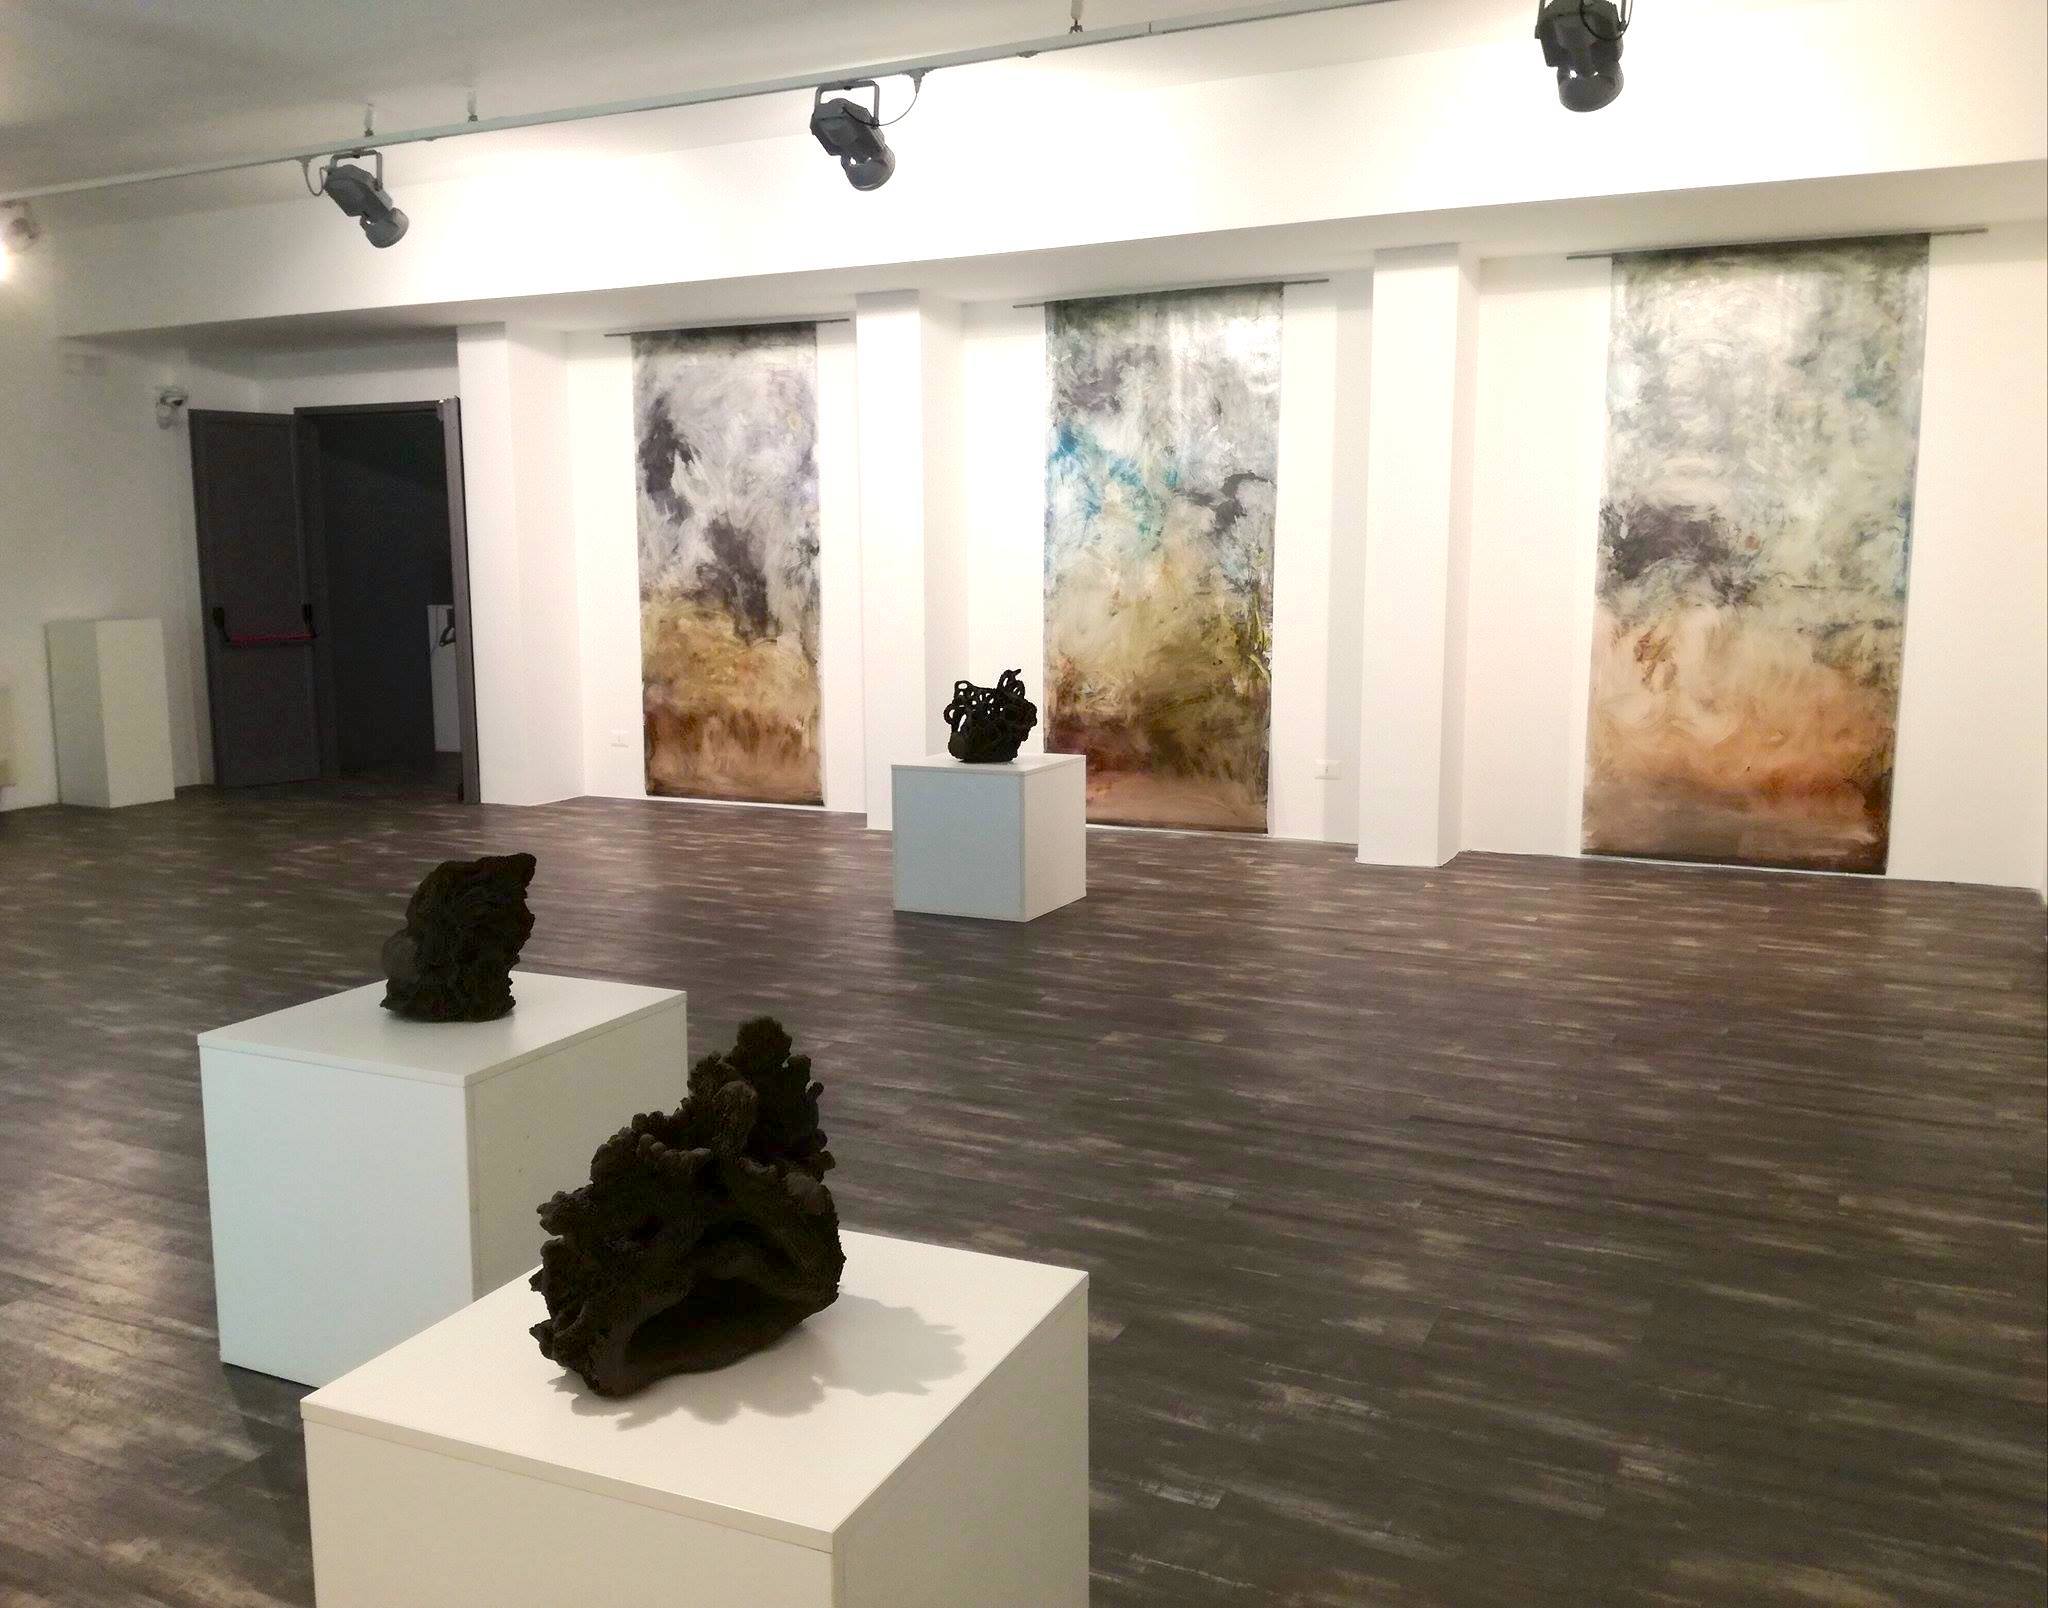 Showcase Sarah Jérôme. Exhibition view at Fondazione Museo Pino Pascali, Polignano a Mare 2017